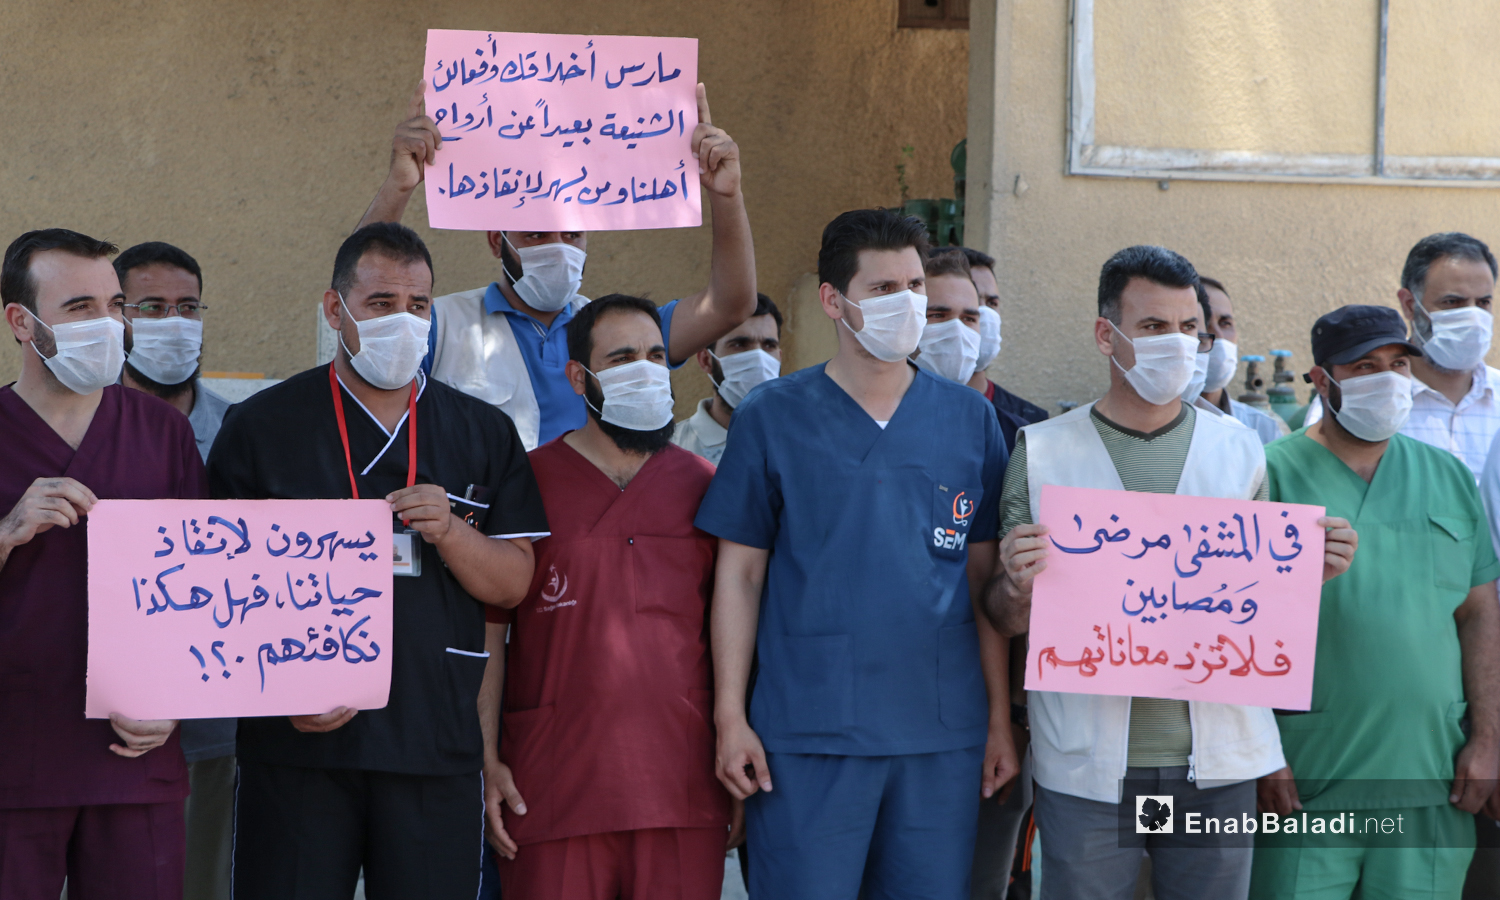 وقفة احتجاجية ضد لاعتداءات العكسرية على المراكز الطبية في مدينة الباب بريف حلب الشمالي - 5 من تموز 2020 (عنب بلدي/ عاصم الملحم)